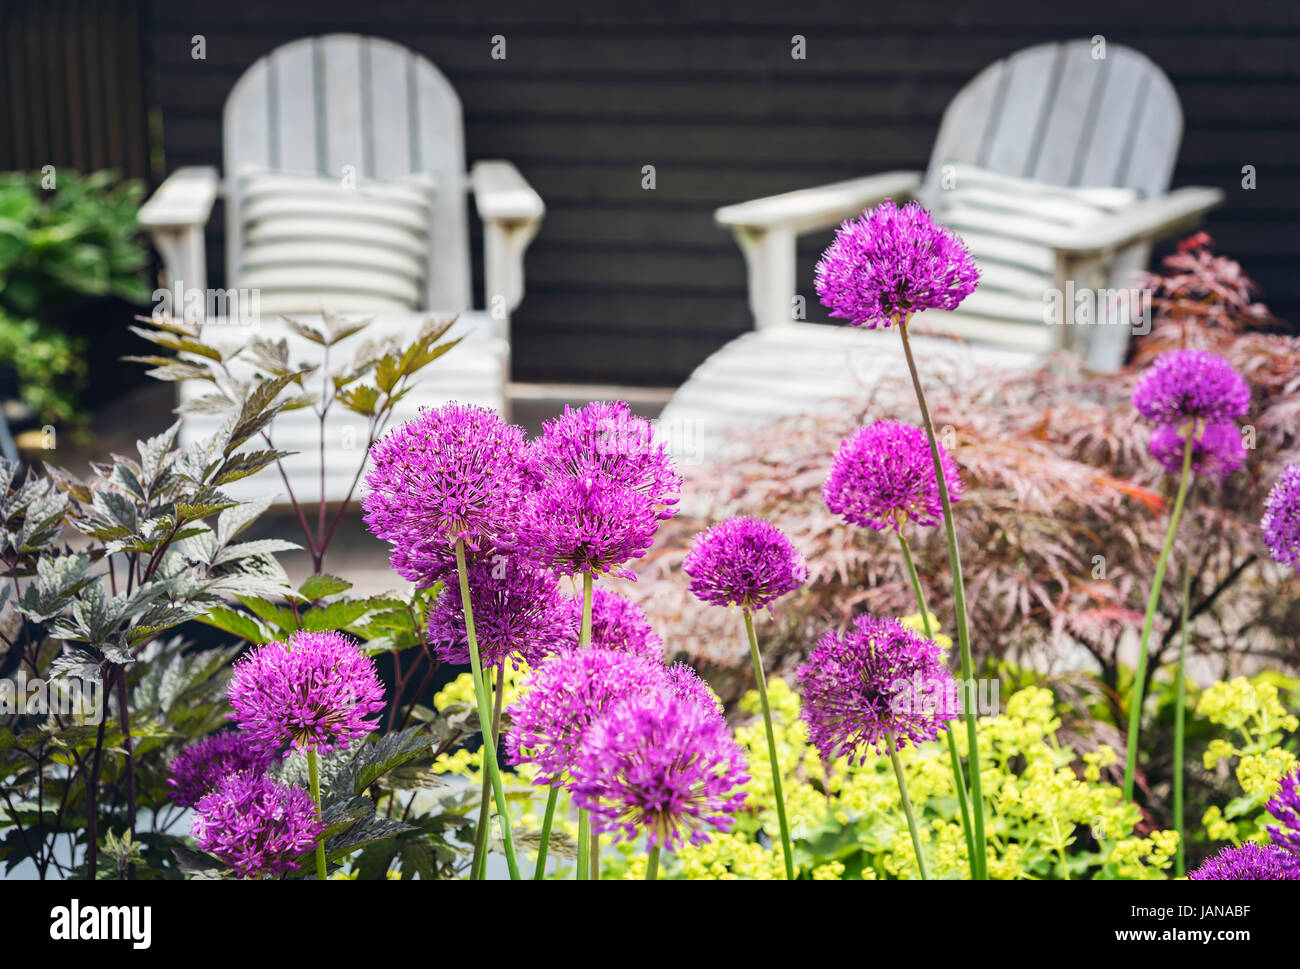 Estanque patio muebles de jardin fotografías e imágenes de alta resolución  - Alamy